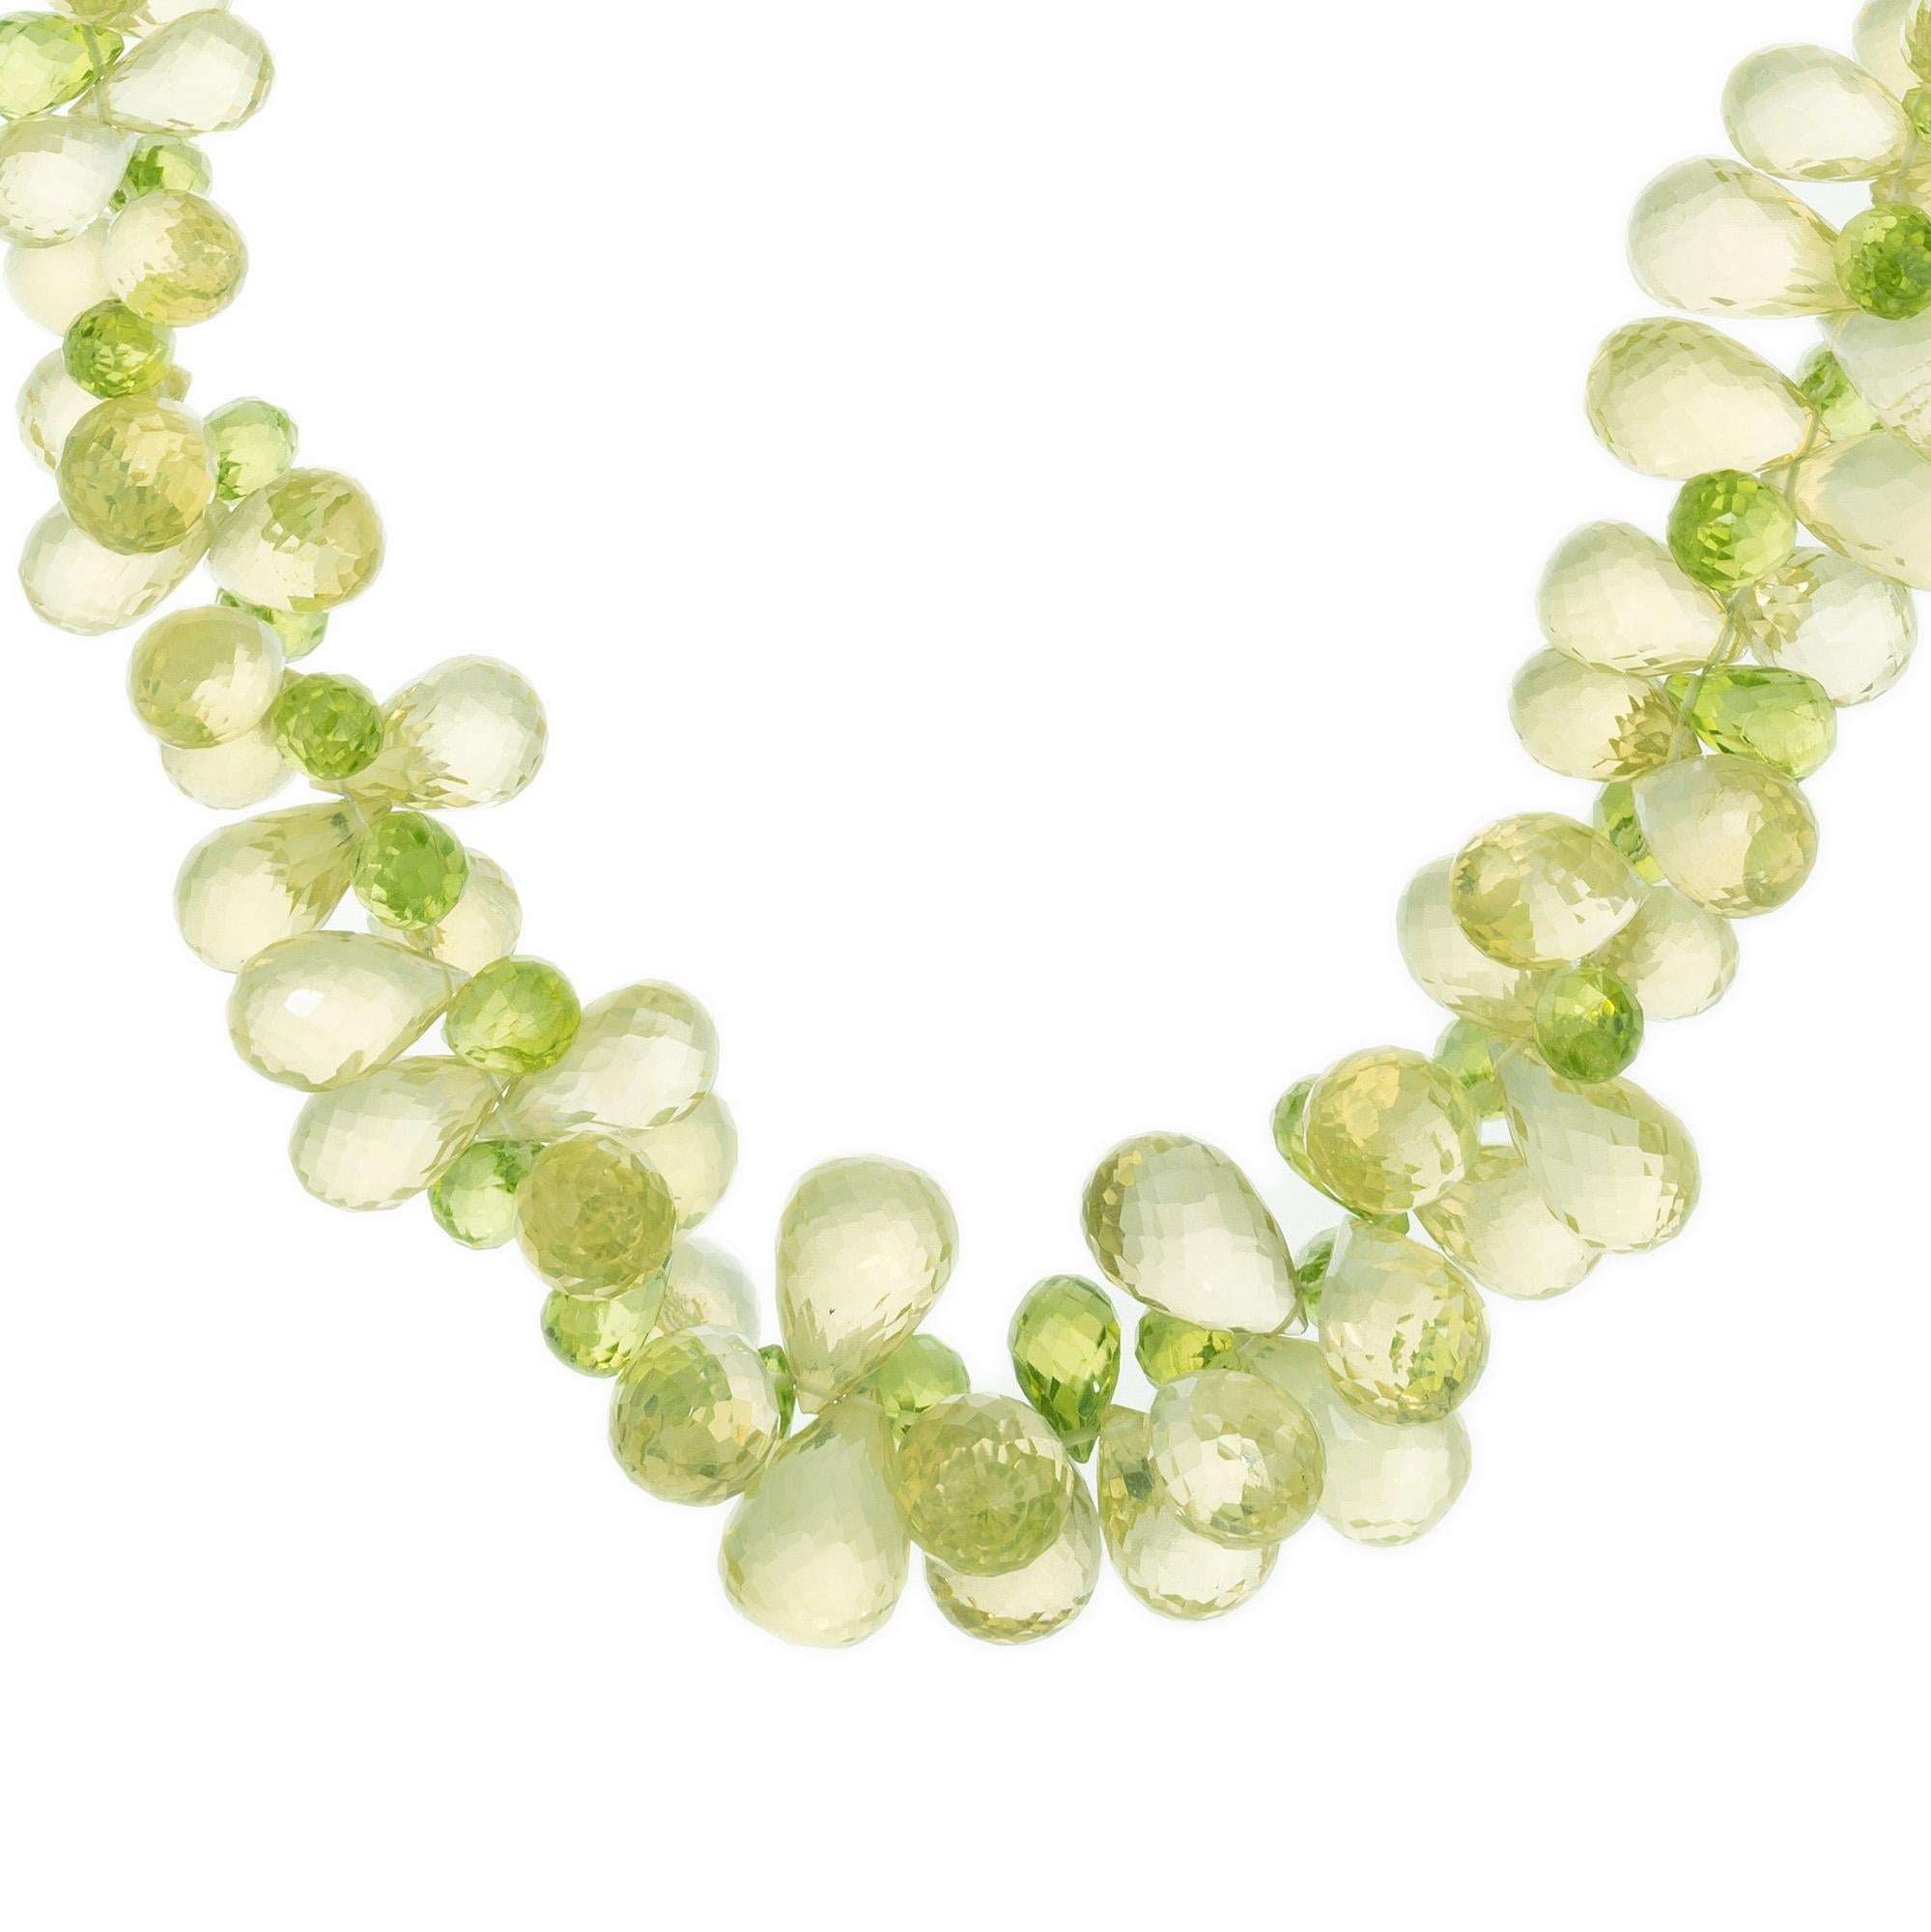 Birne Peridot und Citrin grün und gelb Briolette Perle Gold Halskette. Die 200 abgestuften Briolette-Perlen bieten eine harmonische Mischung aus leuchtend gelben und grünen Peridot- und Citrin-Edelsteinen, die wunderschön in einem Cluster-Design